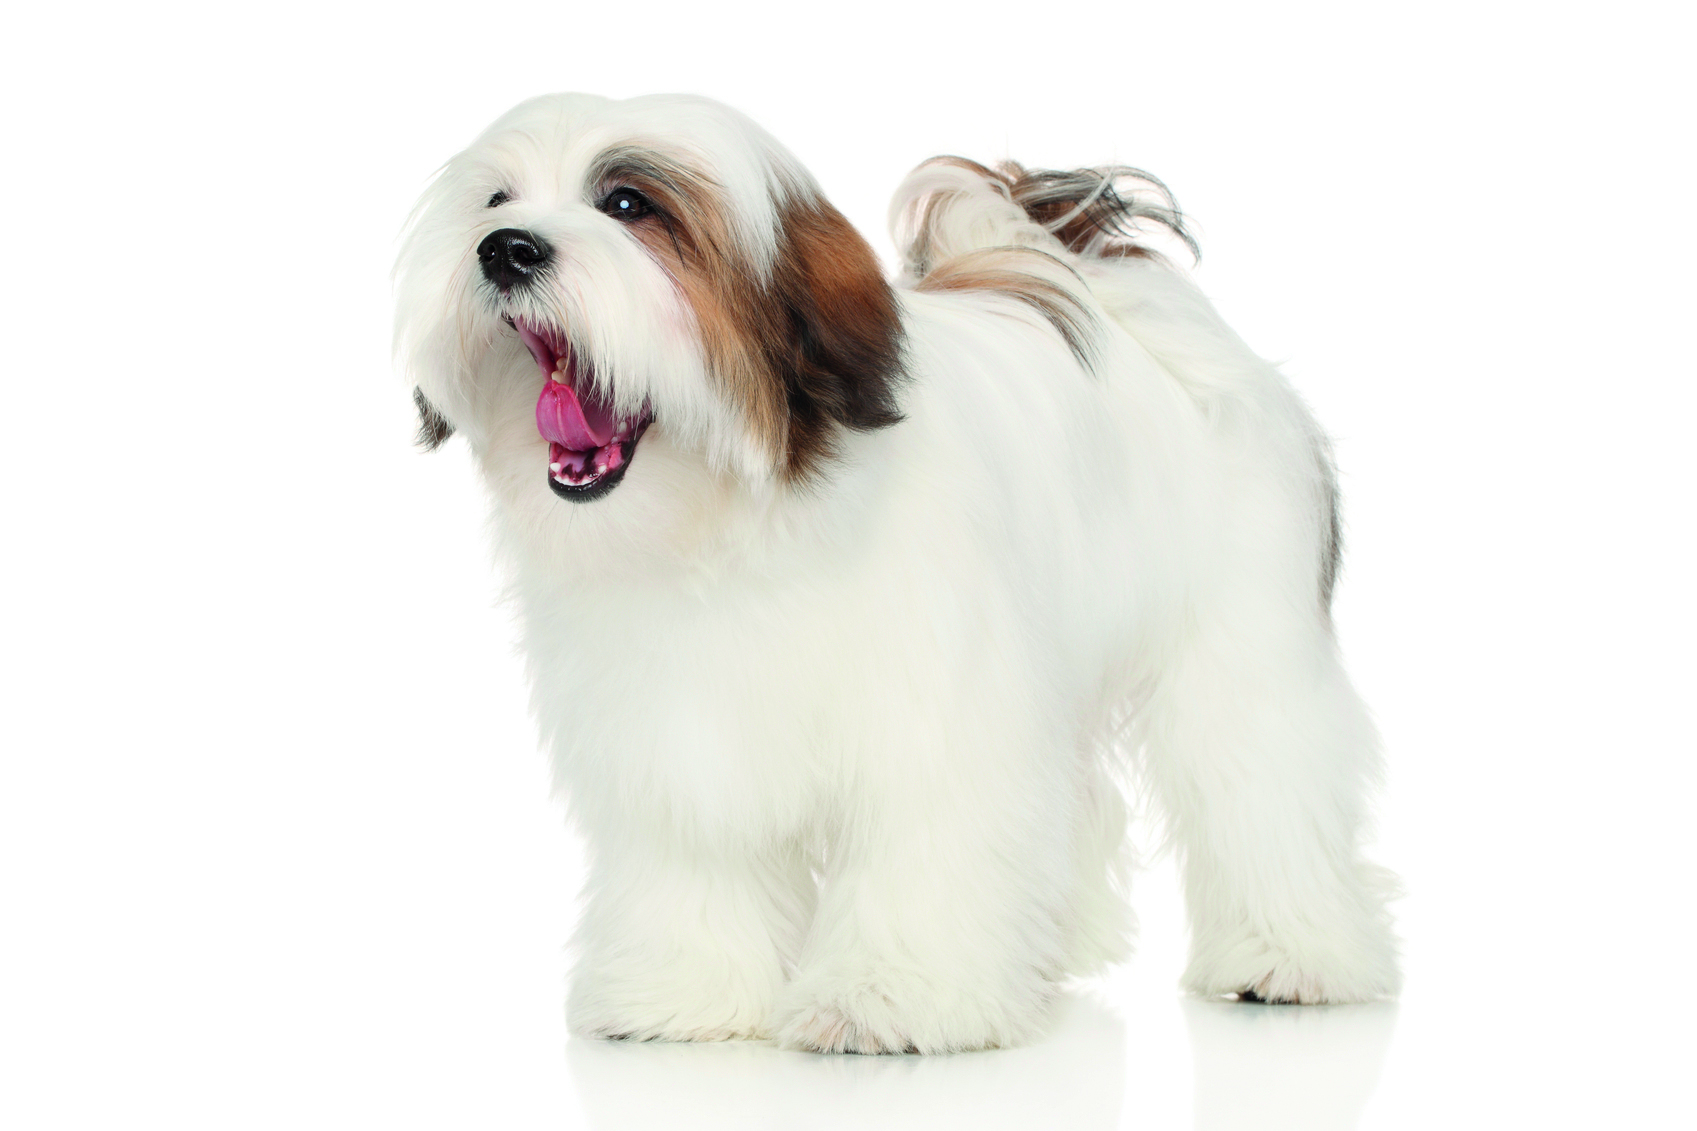 Lhasa Apso dog yawns. Portrait on white background